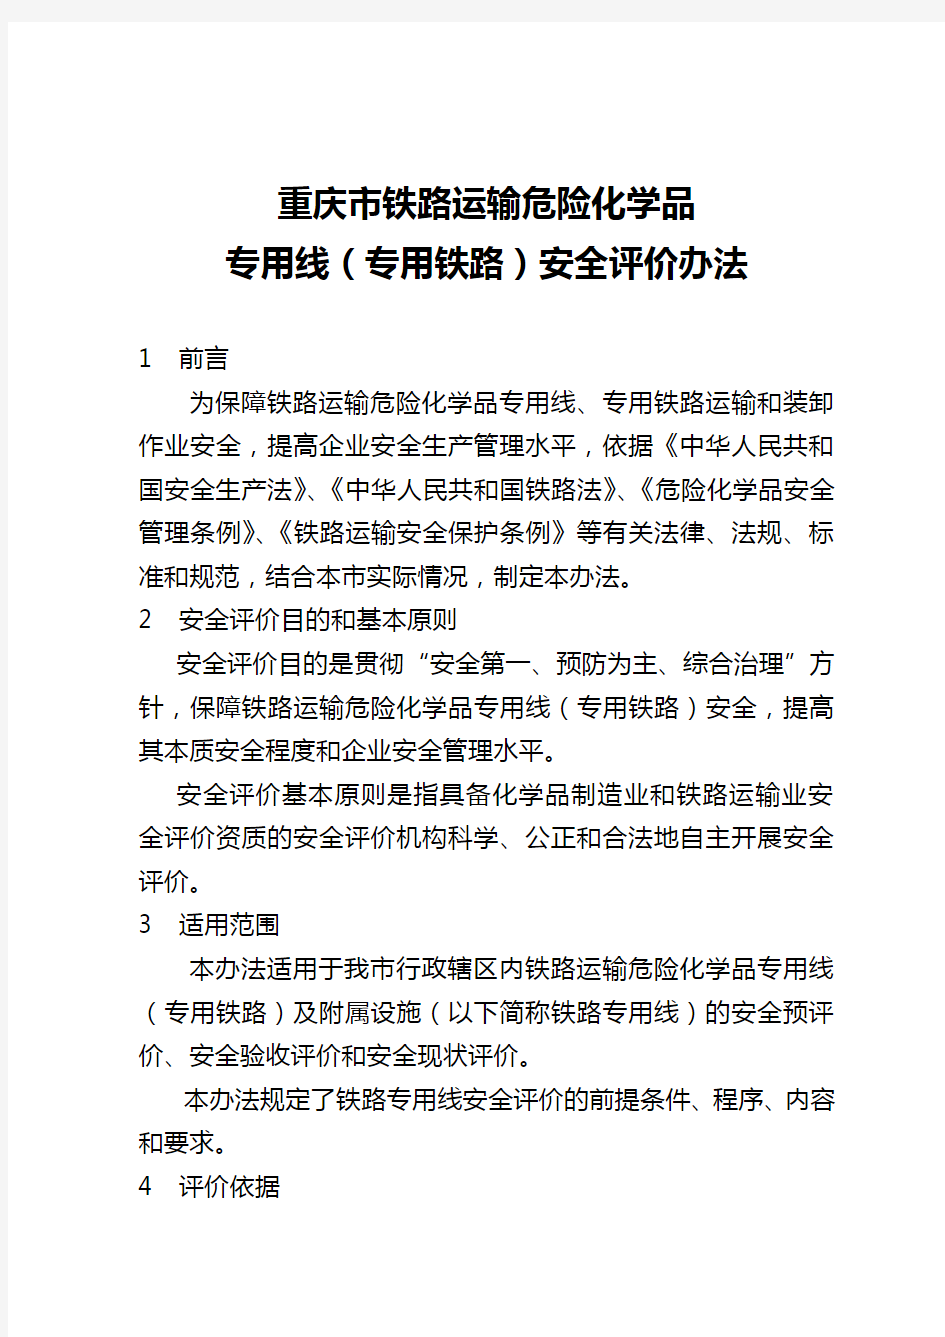 2020年(交通运输)重庆市铁路运输危险化学品专用线号文